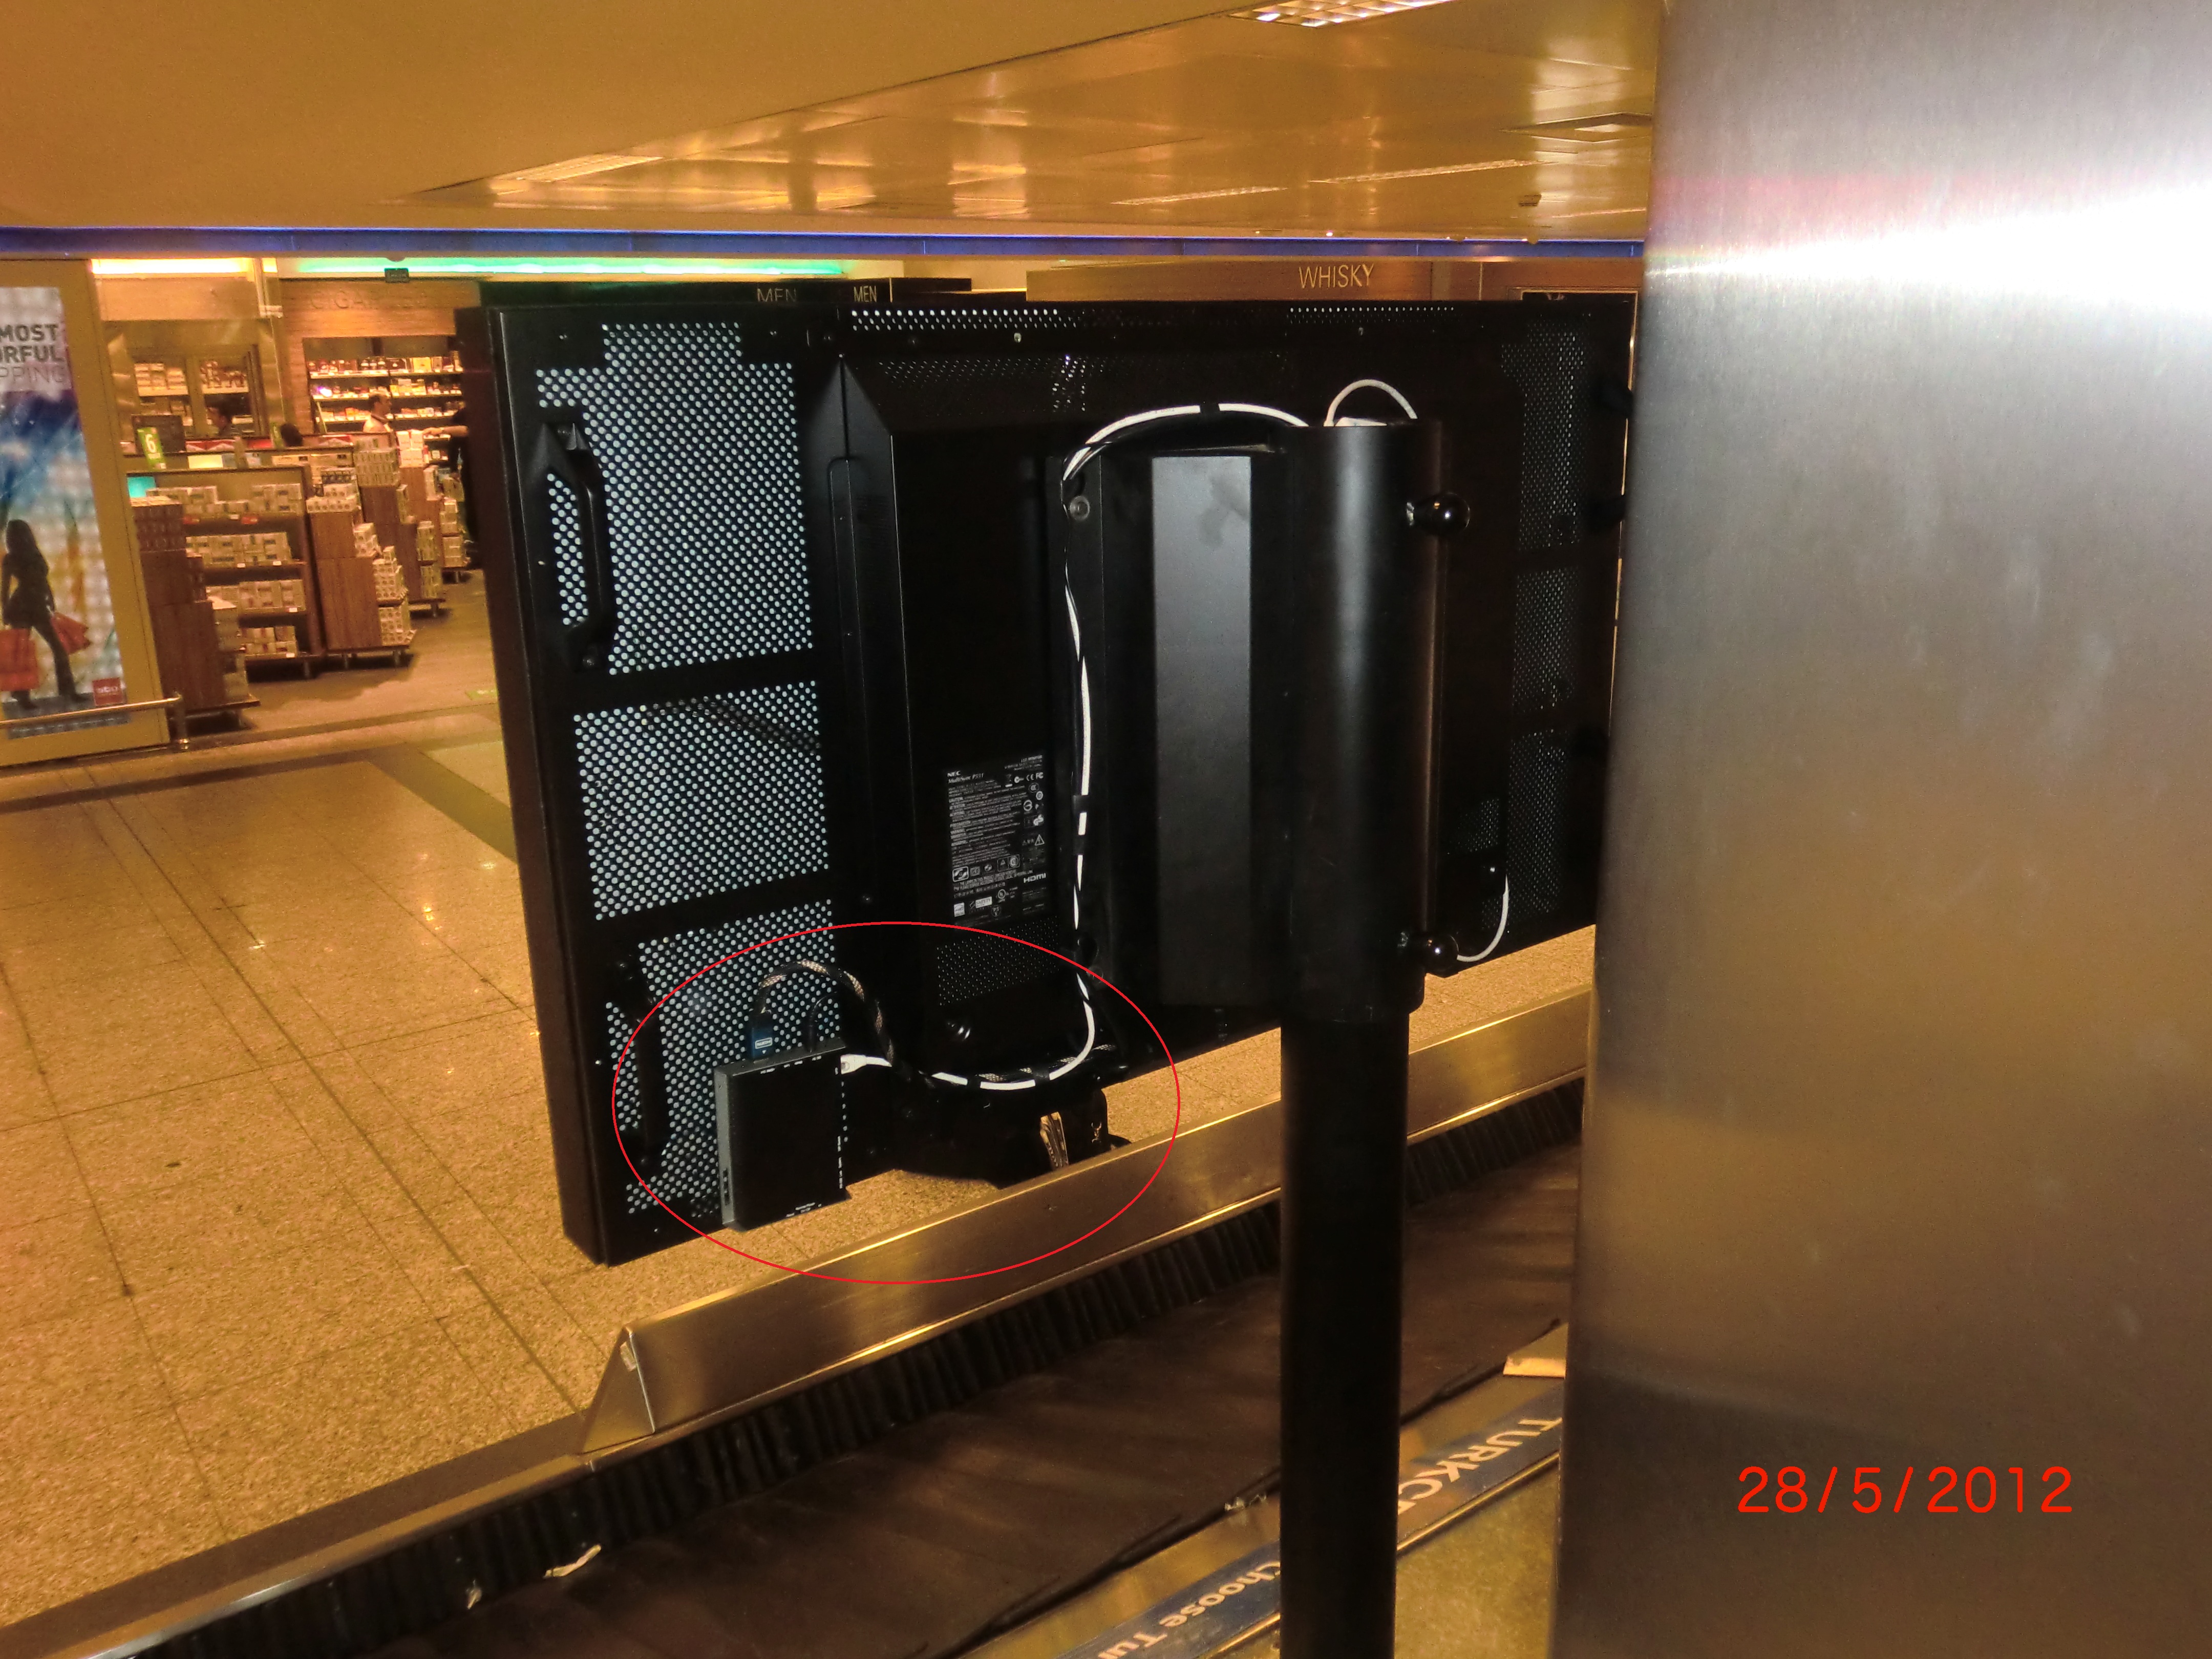 Istanbul-ataturk-airport-baggage-claim.jpg